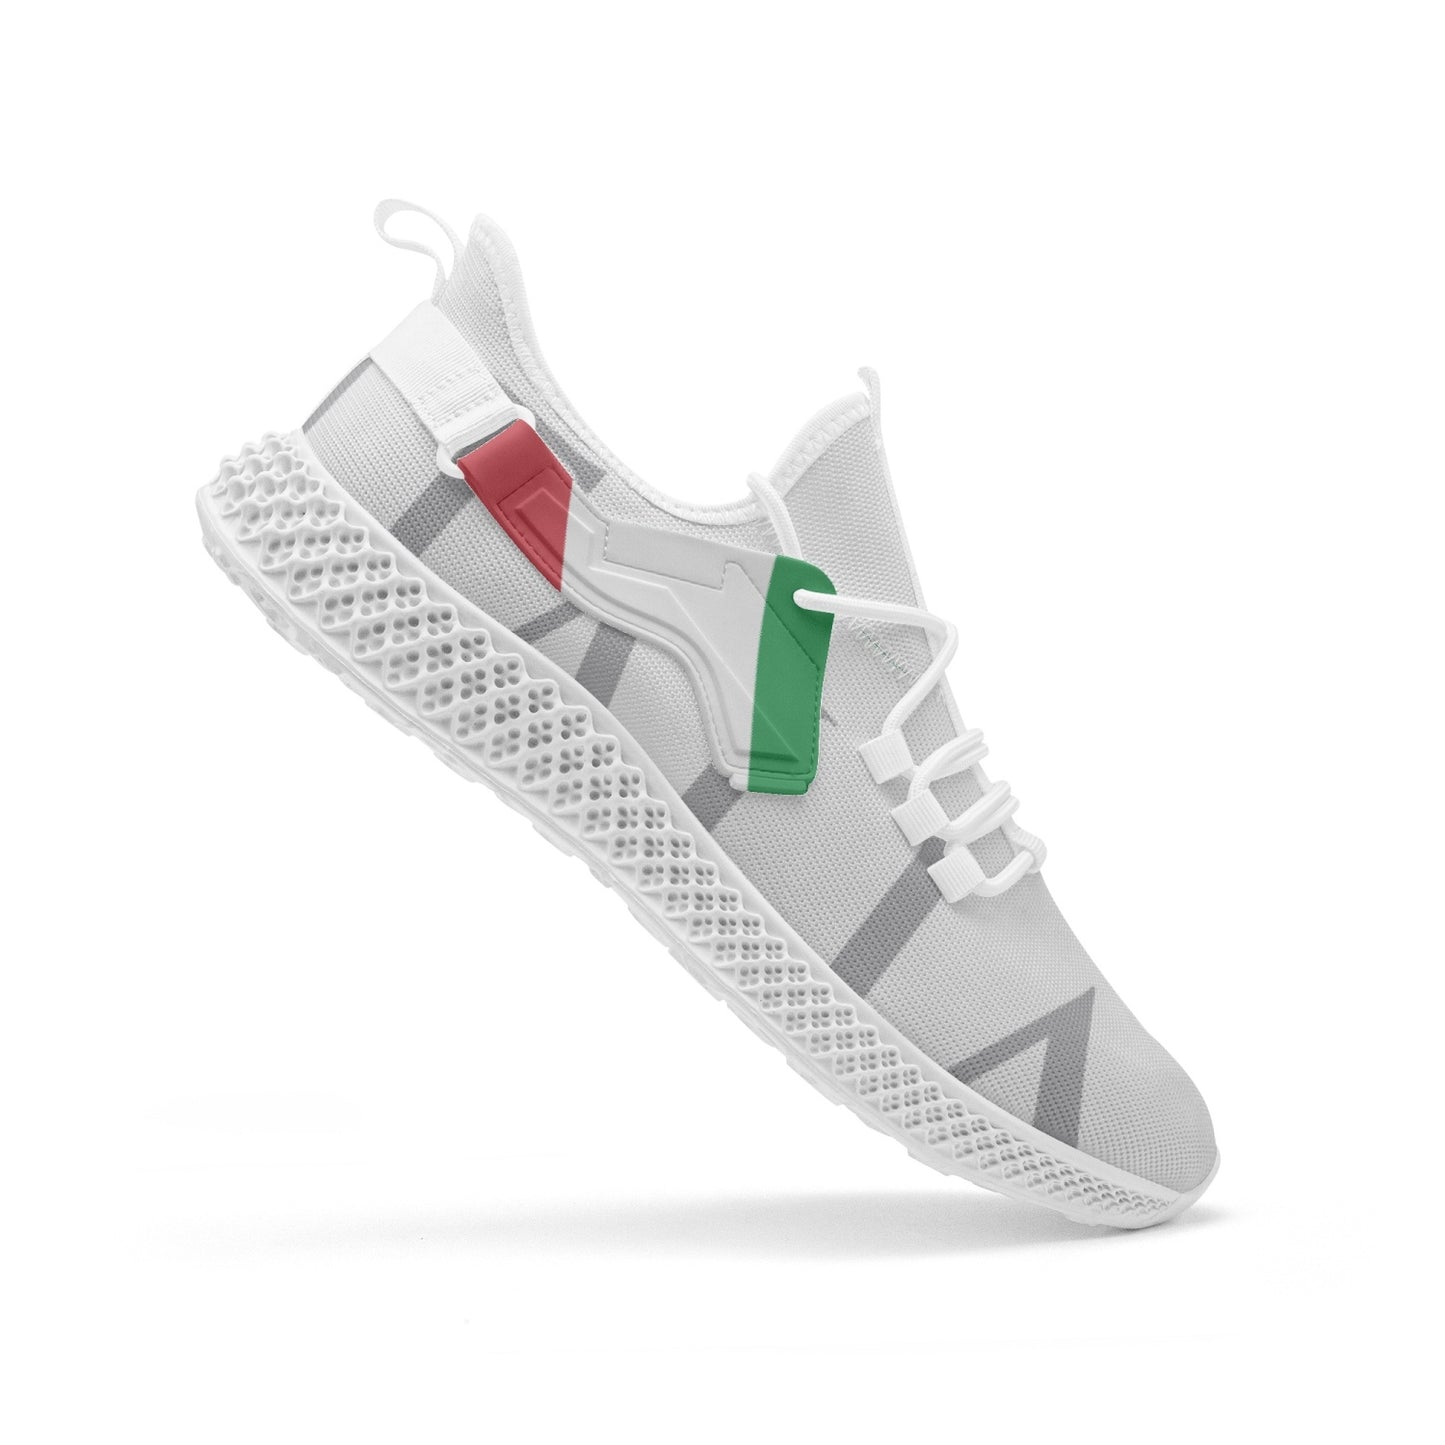 Italia Net Mesh Knit Sneakers - men/women sizes